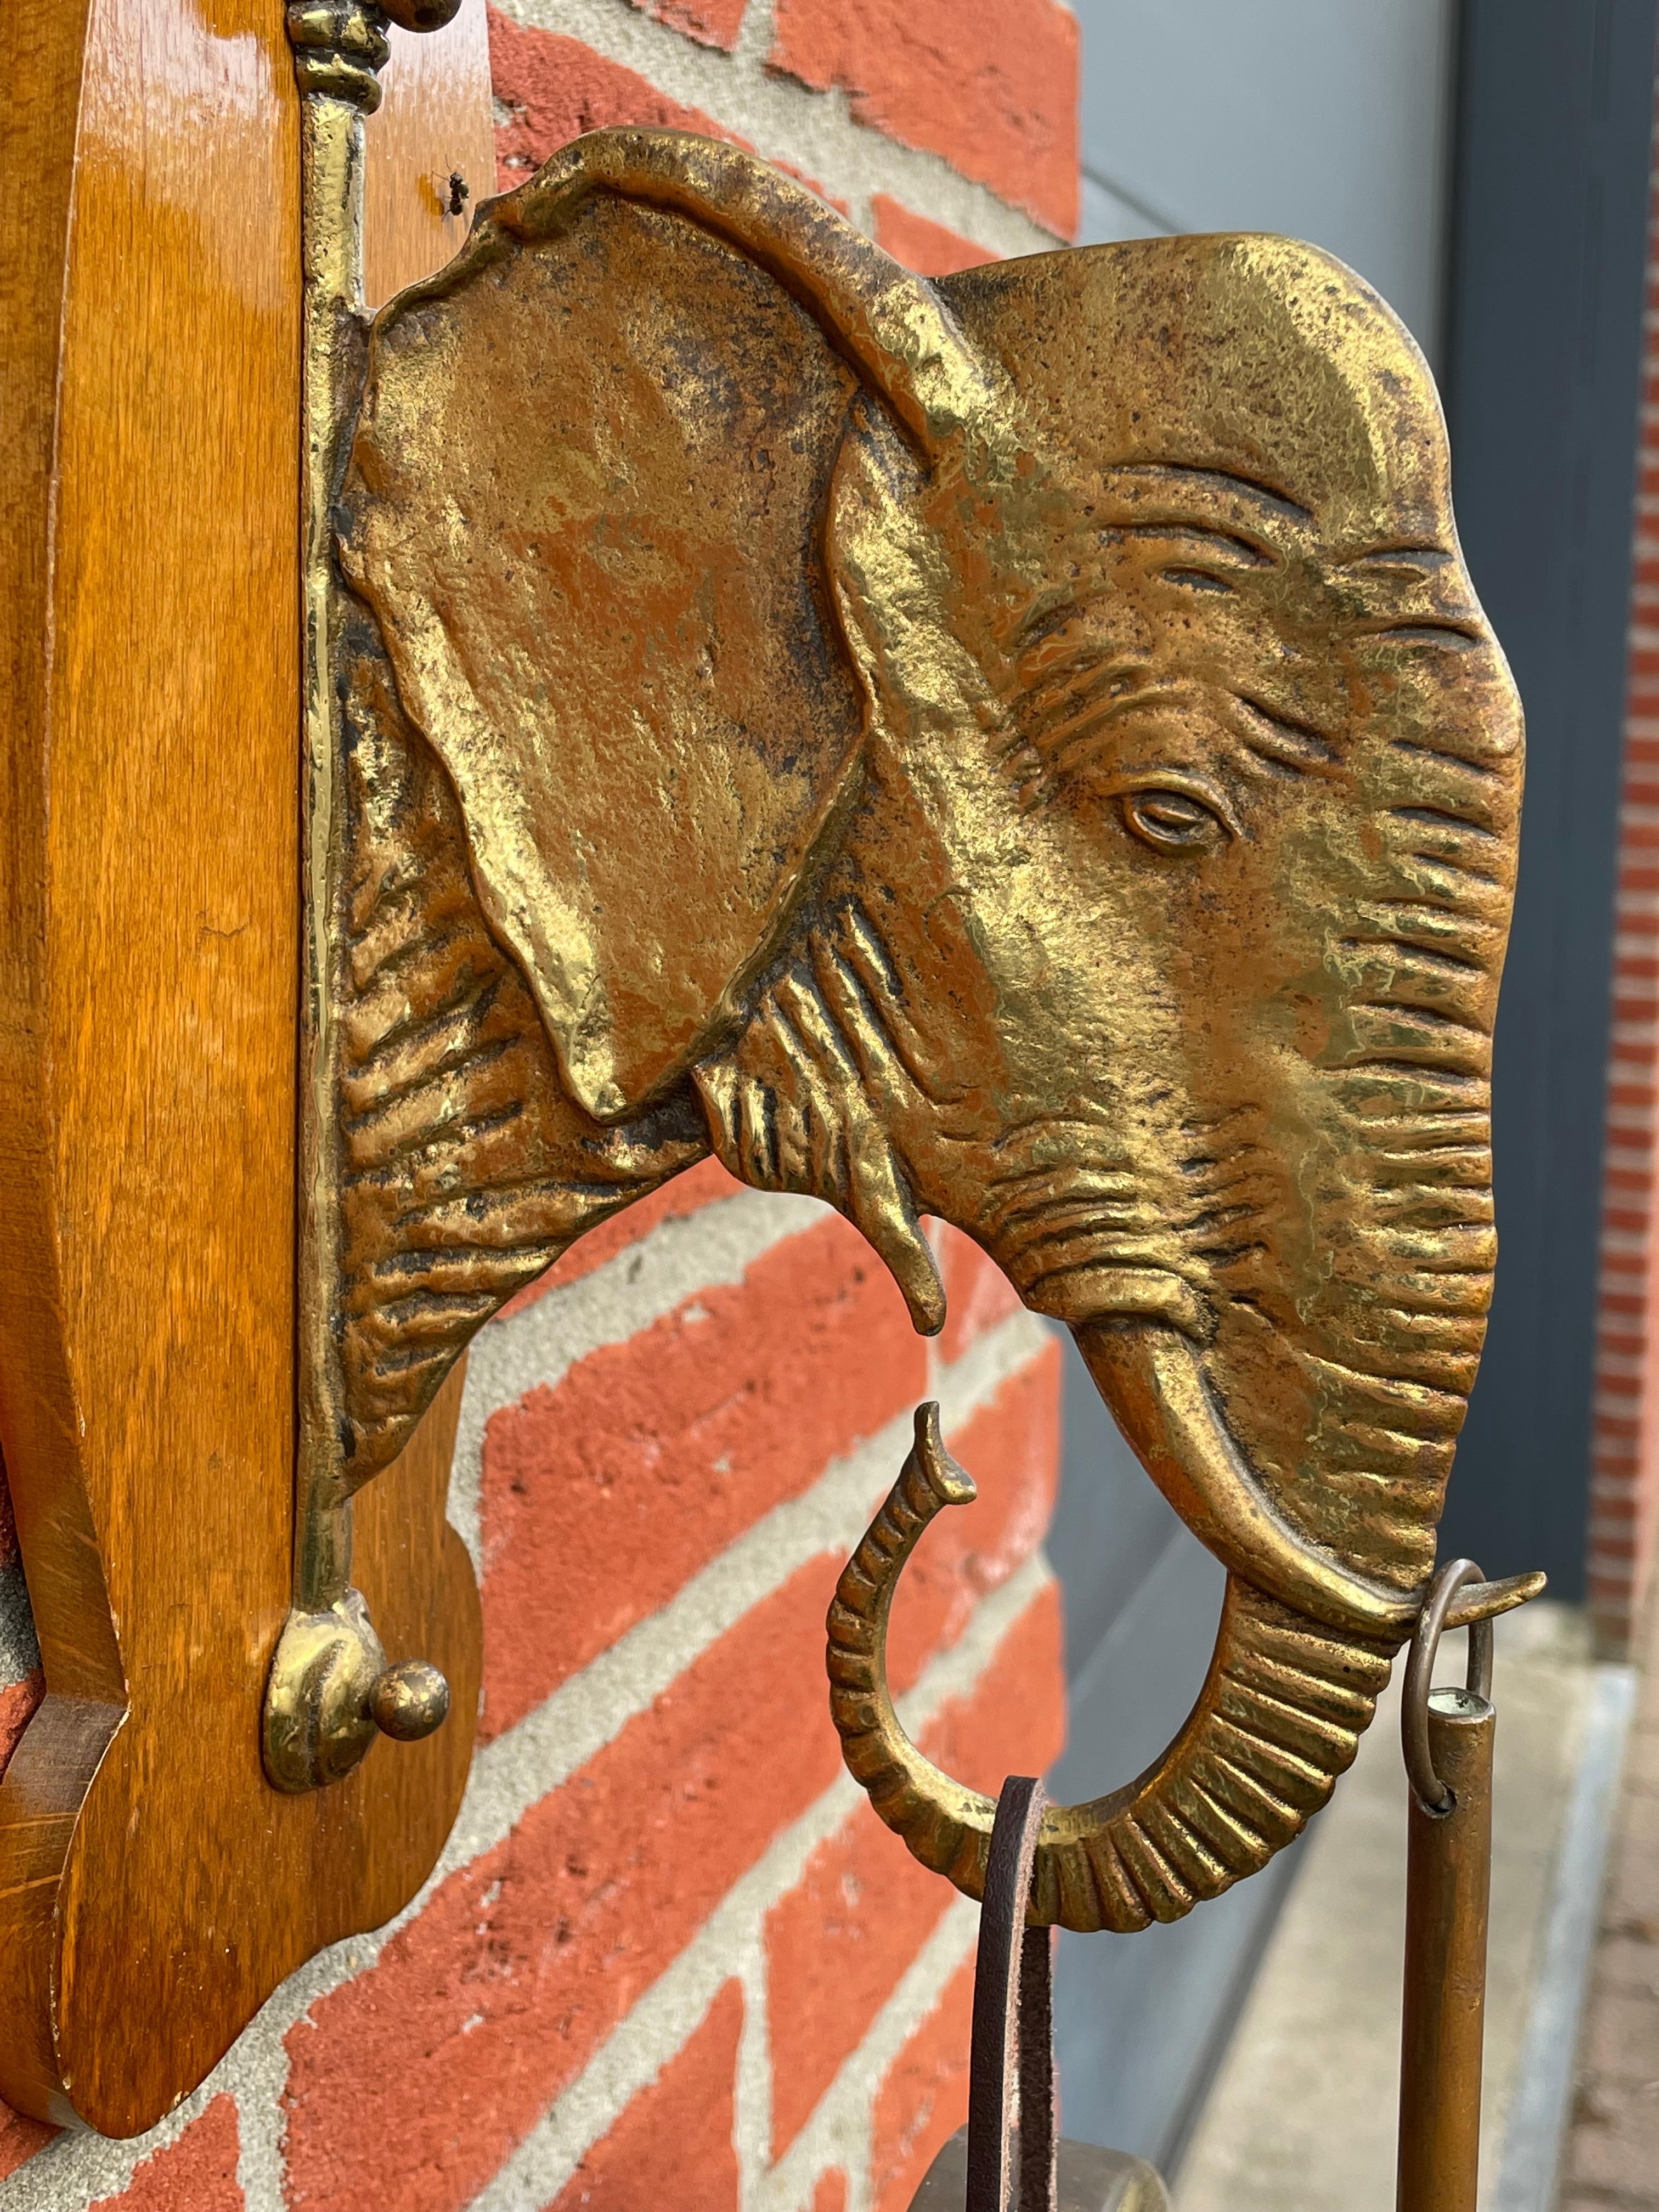 Gong mural Arts & Crafts très rare et frappant (beaucoup de jeux de mots).

Ce remarquable gong de maison avec une sculpture d'éléphant est même accompagné de son percuteur d'origine en parfait état de marche. L'éléphant et le gong en bronze,